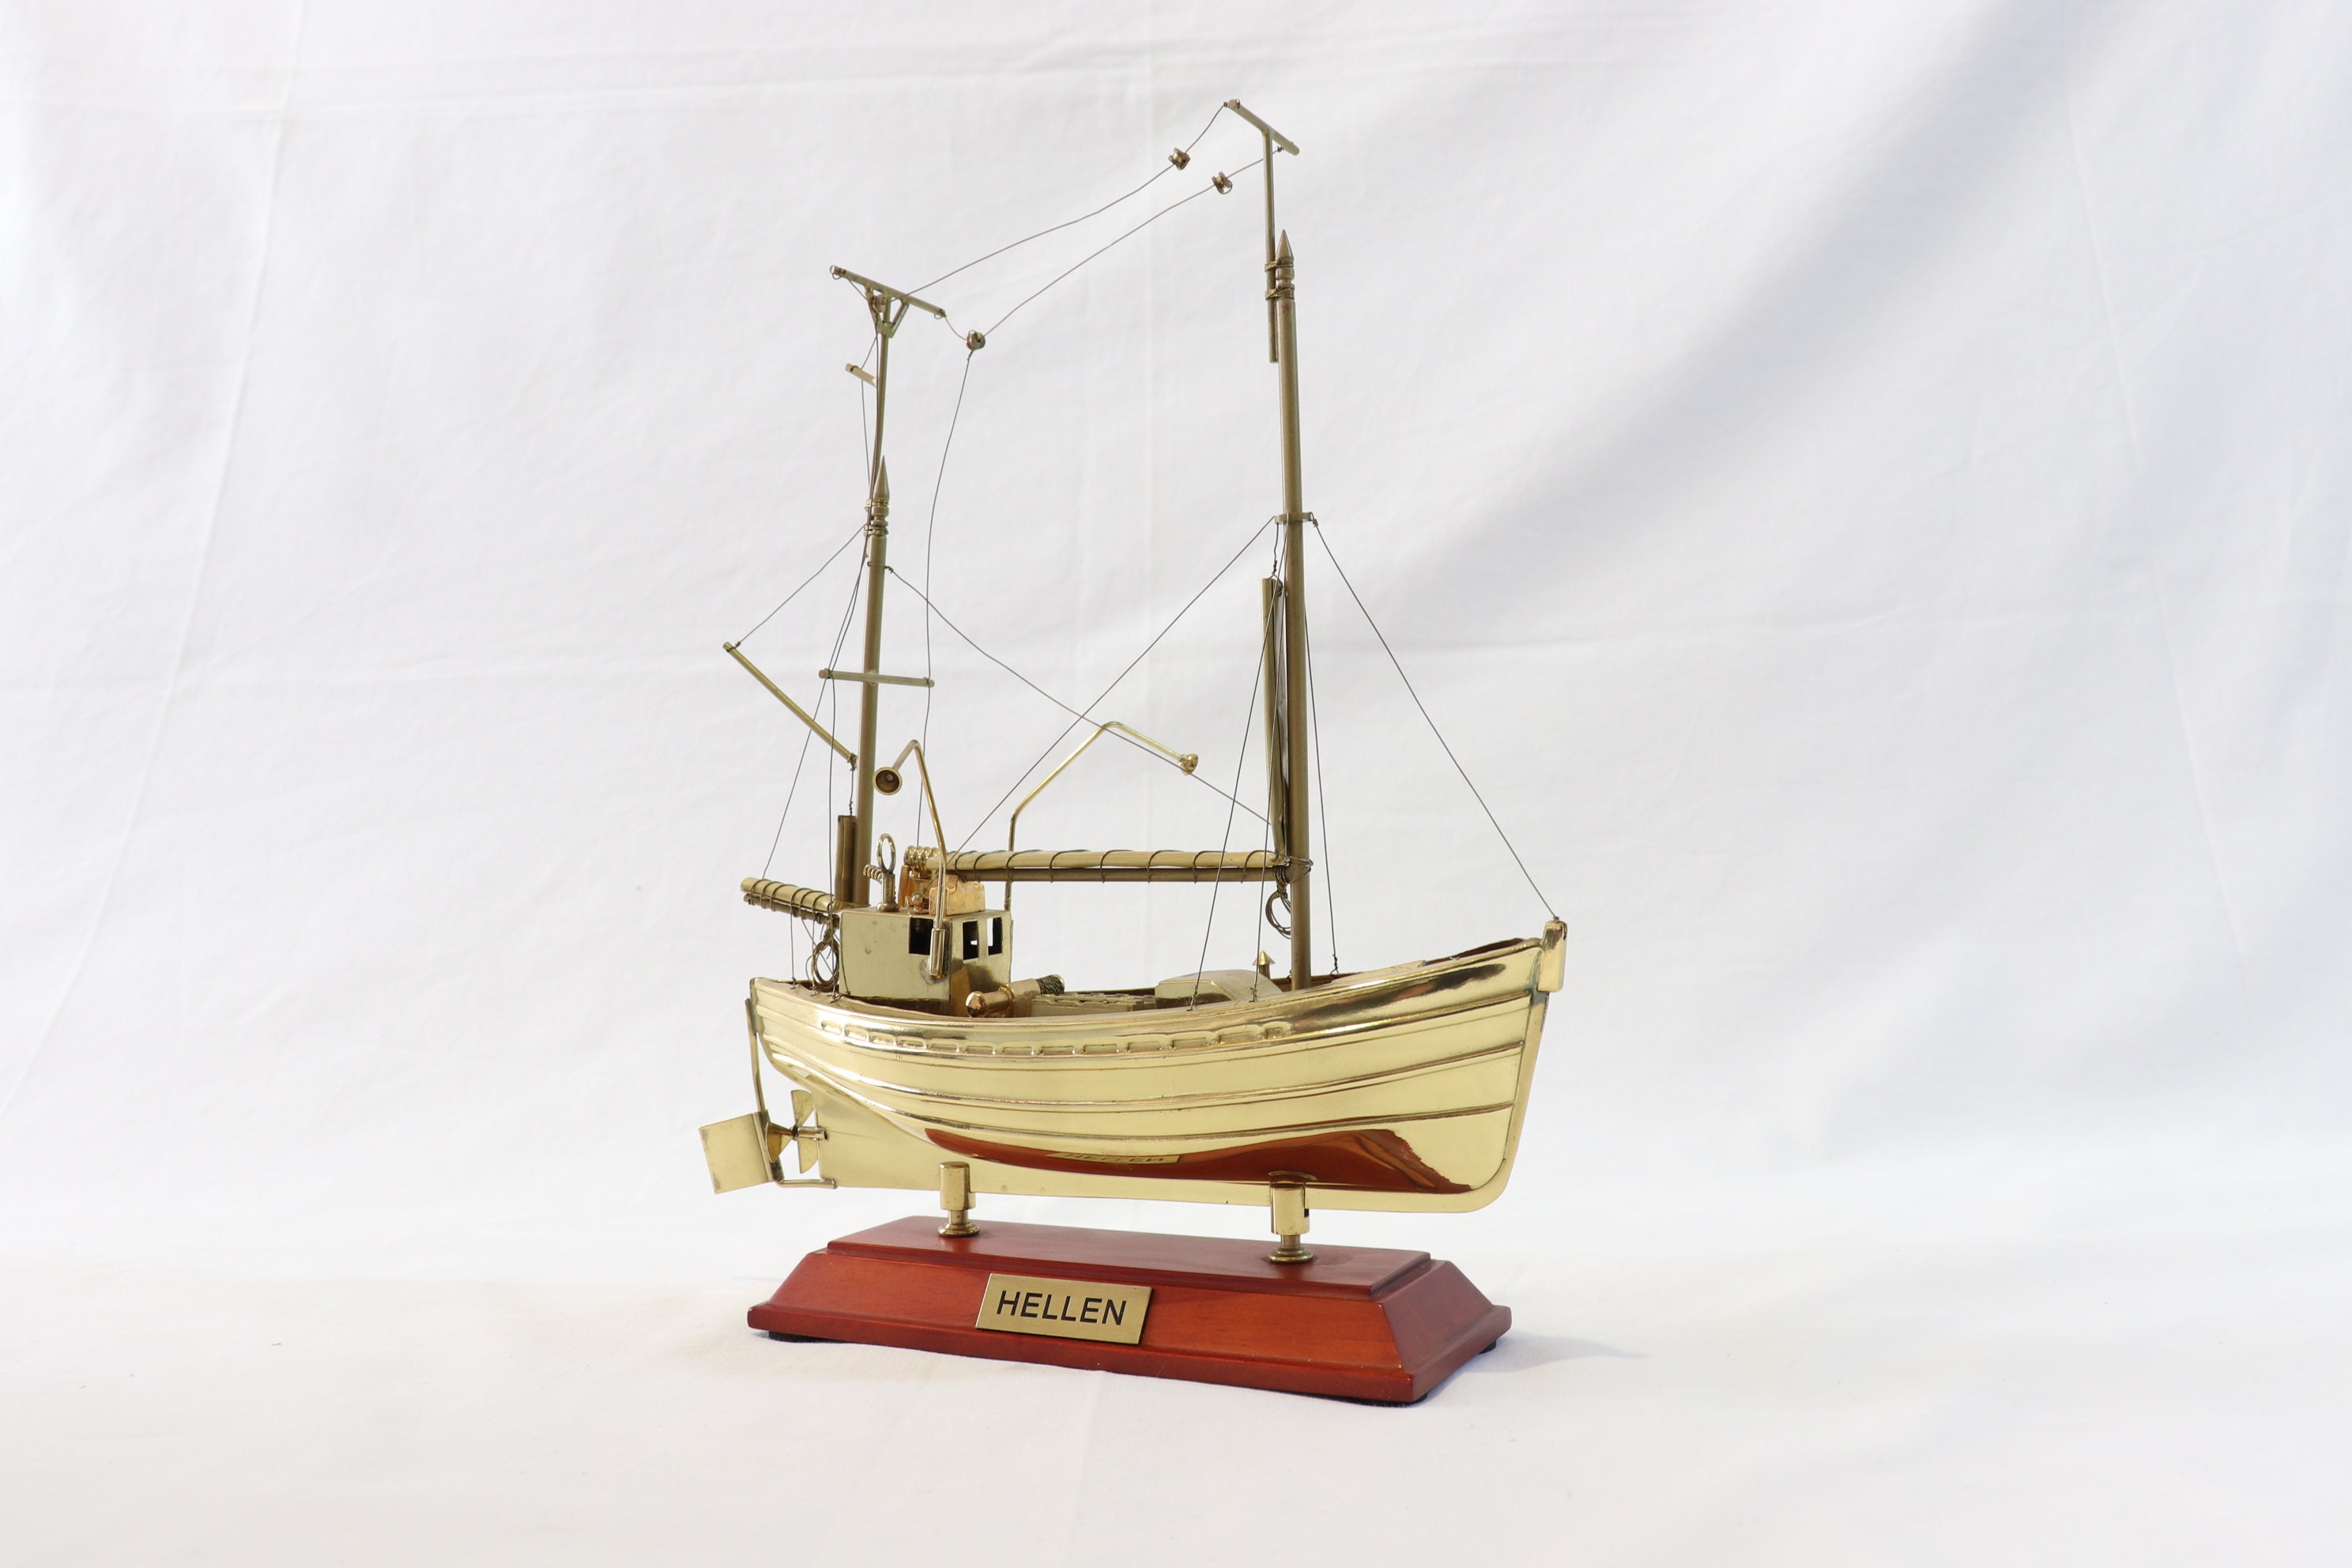 Fishing Boat Model, Hellen, Brass Ship Model, Gold Plated, Metal